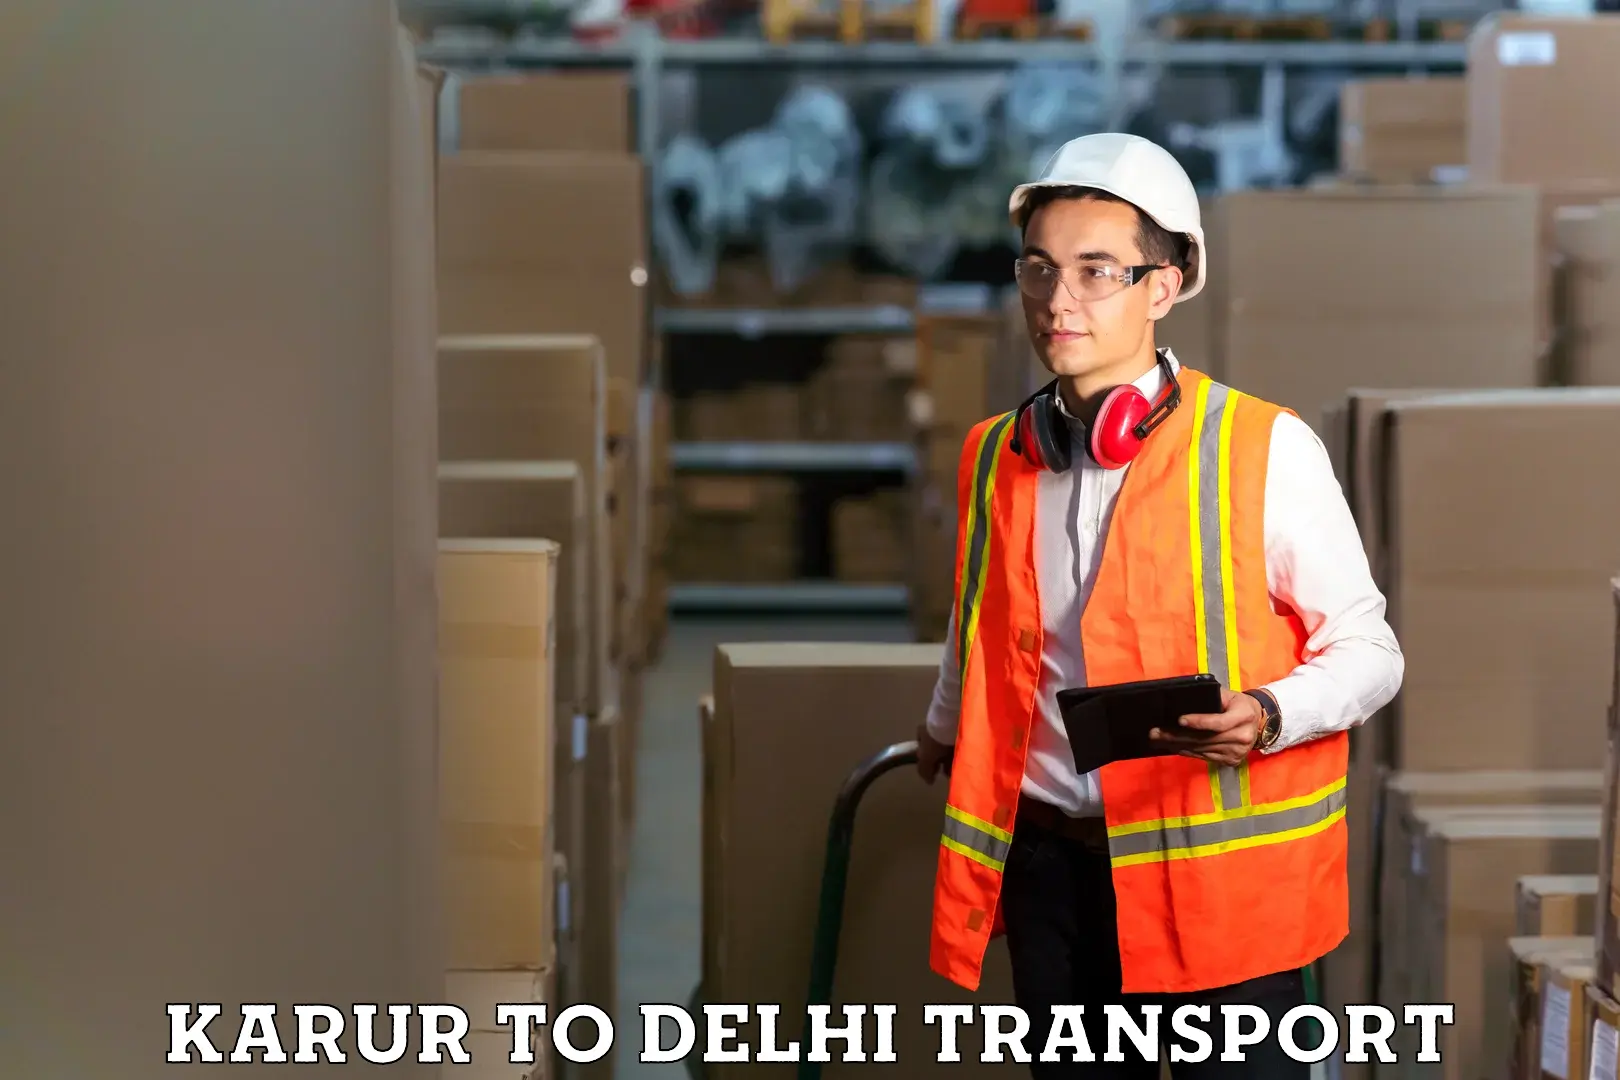 Online transport service Karur to East Delhi